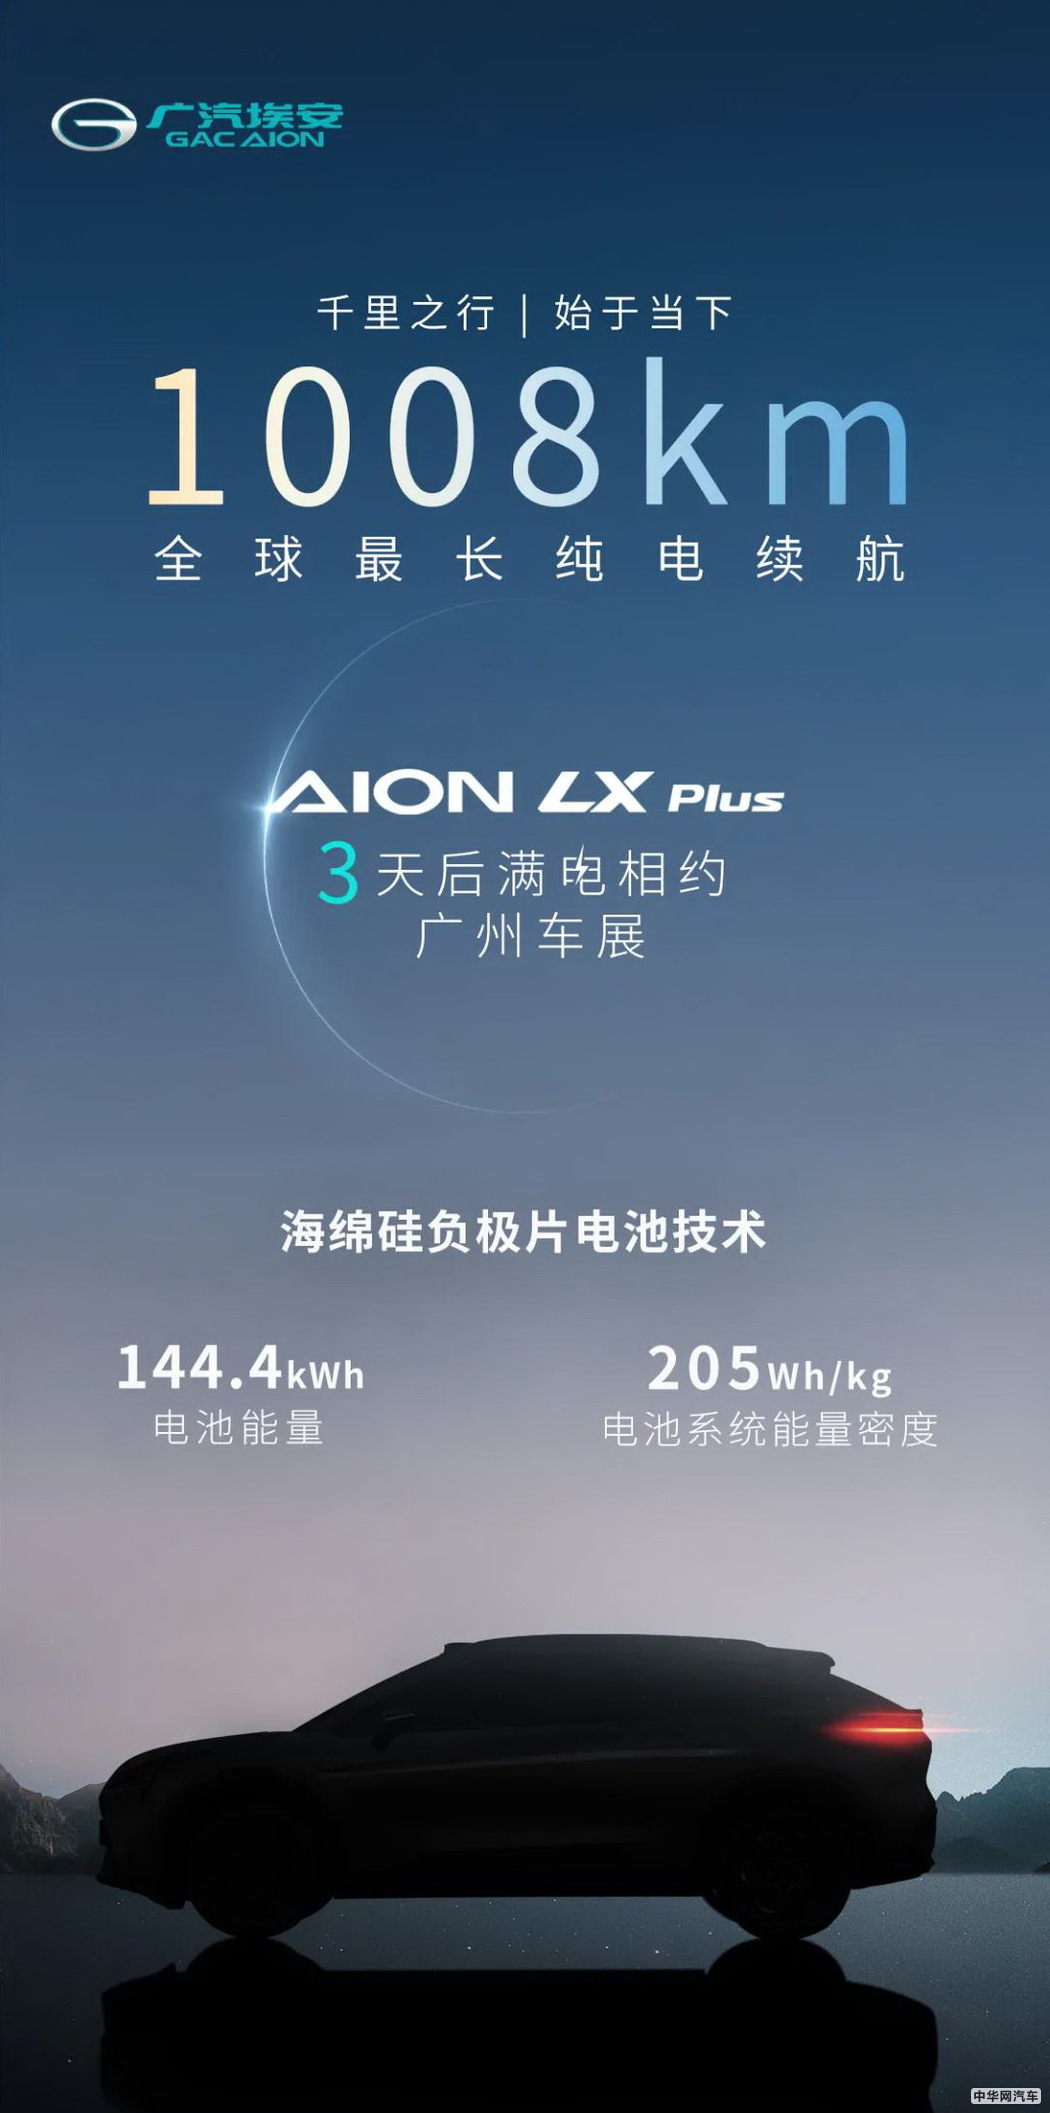 全球首款续航超1000km纯电车 广汽埃安LX Plus